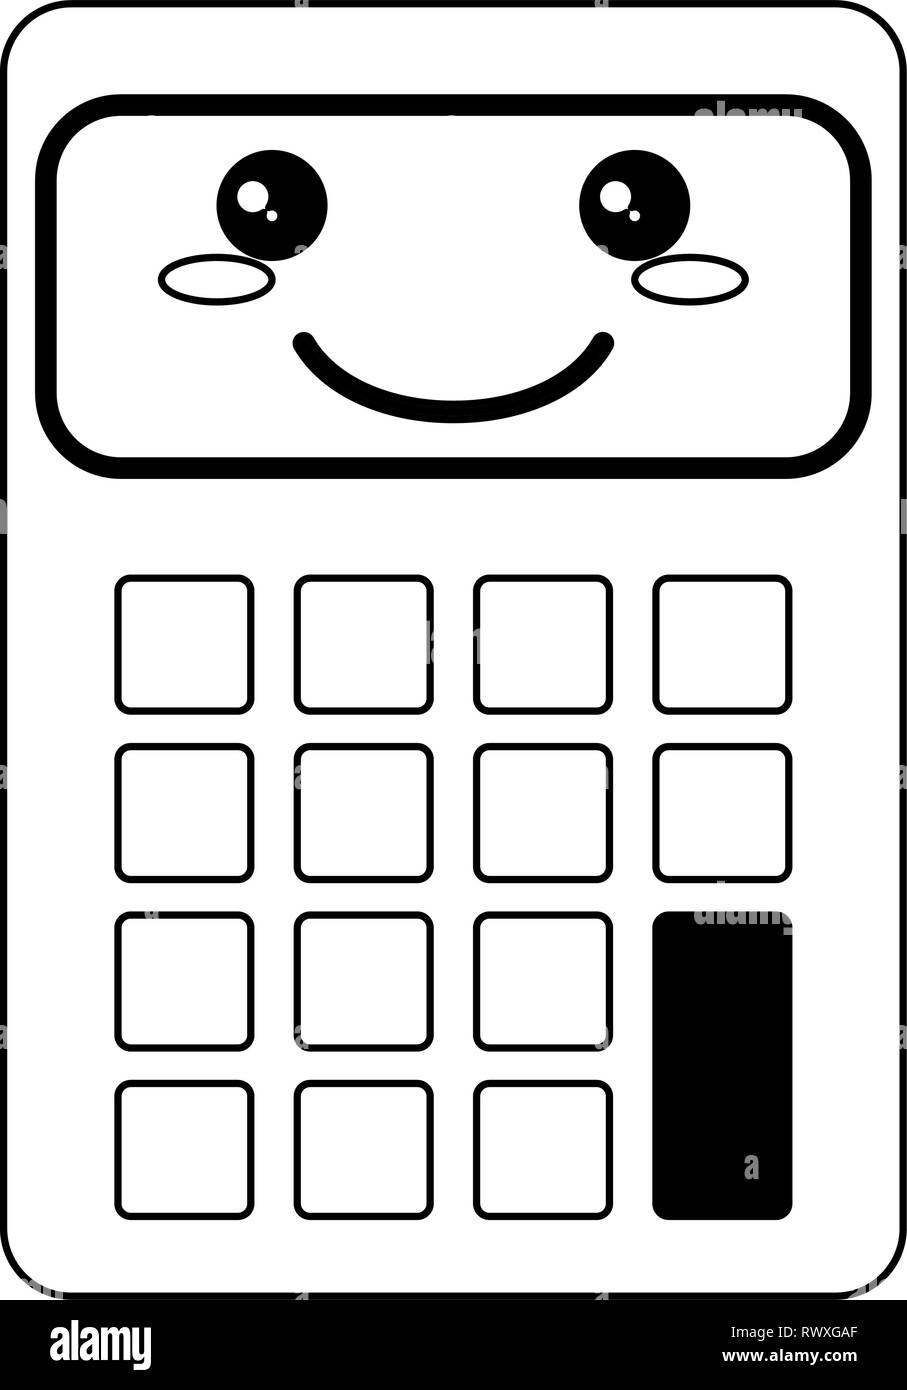 calculator clip art black and white